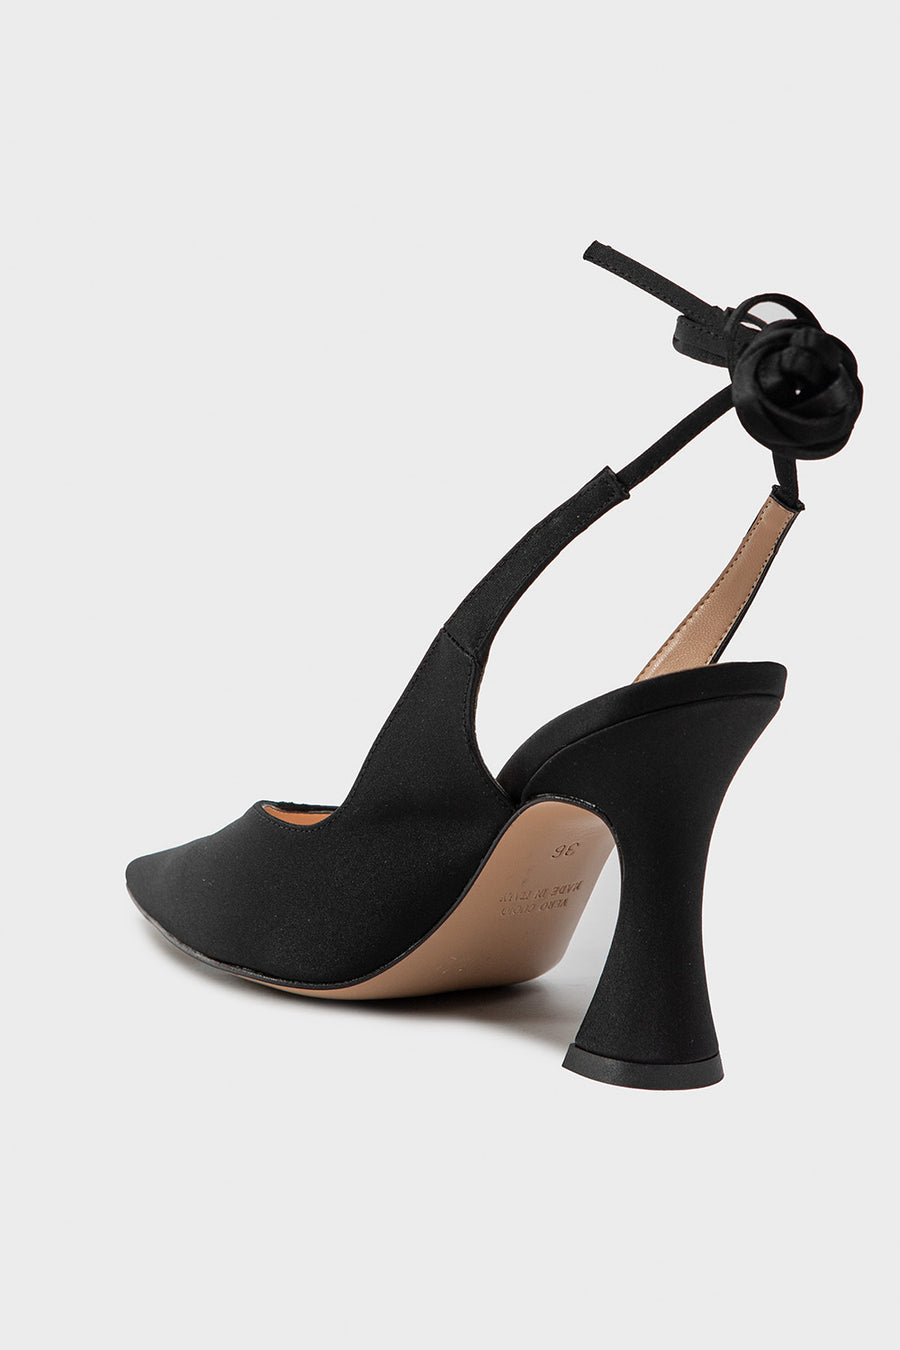 Sandalo Chanel da donna in tessuto nero D988